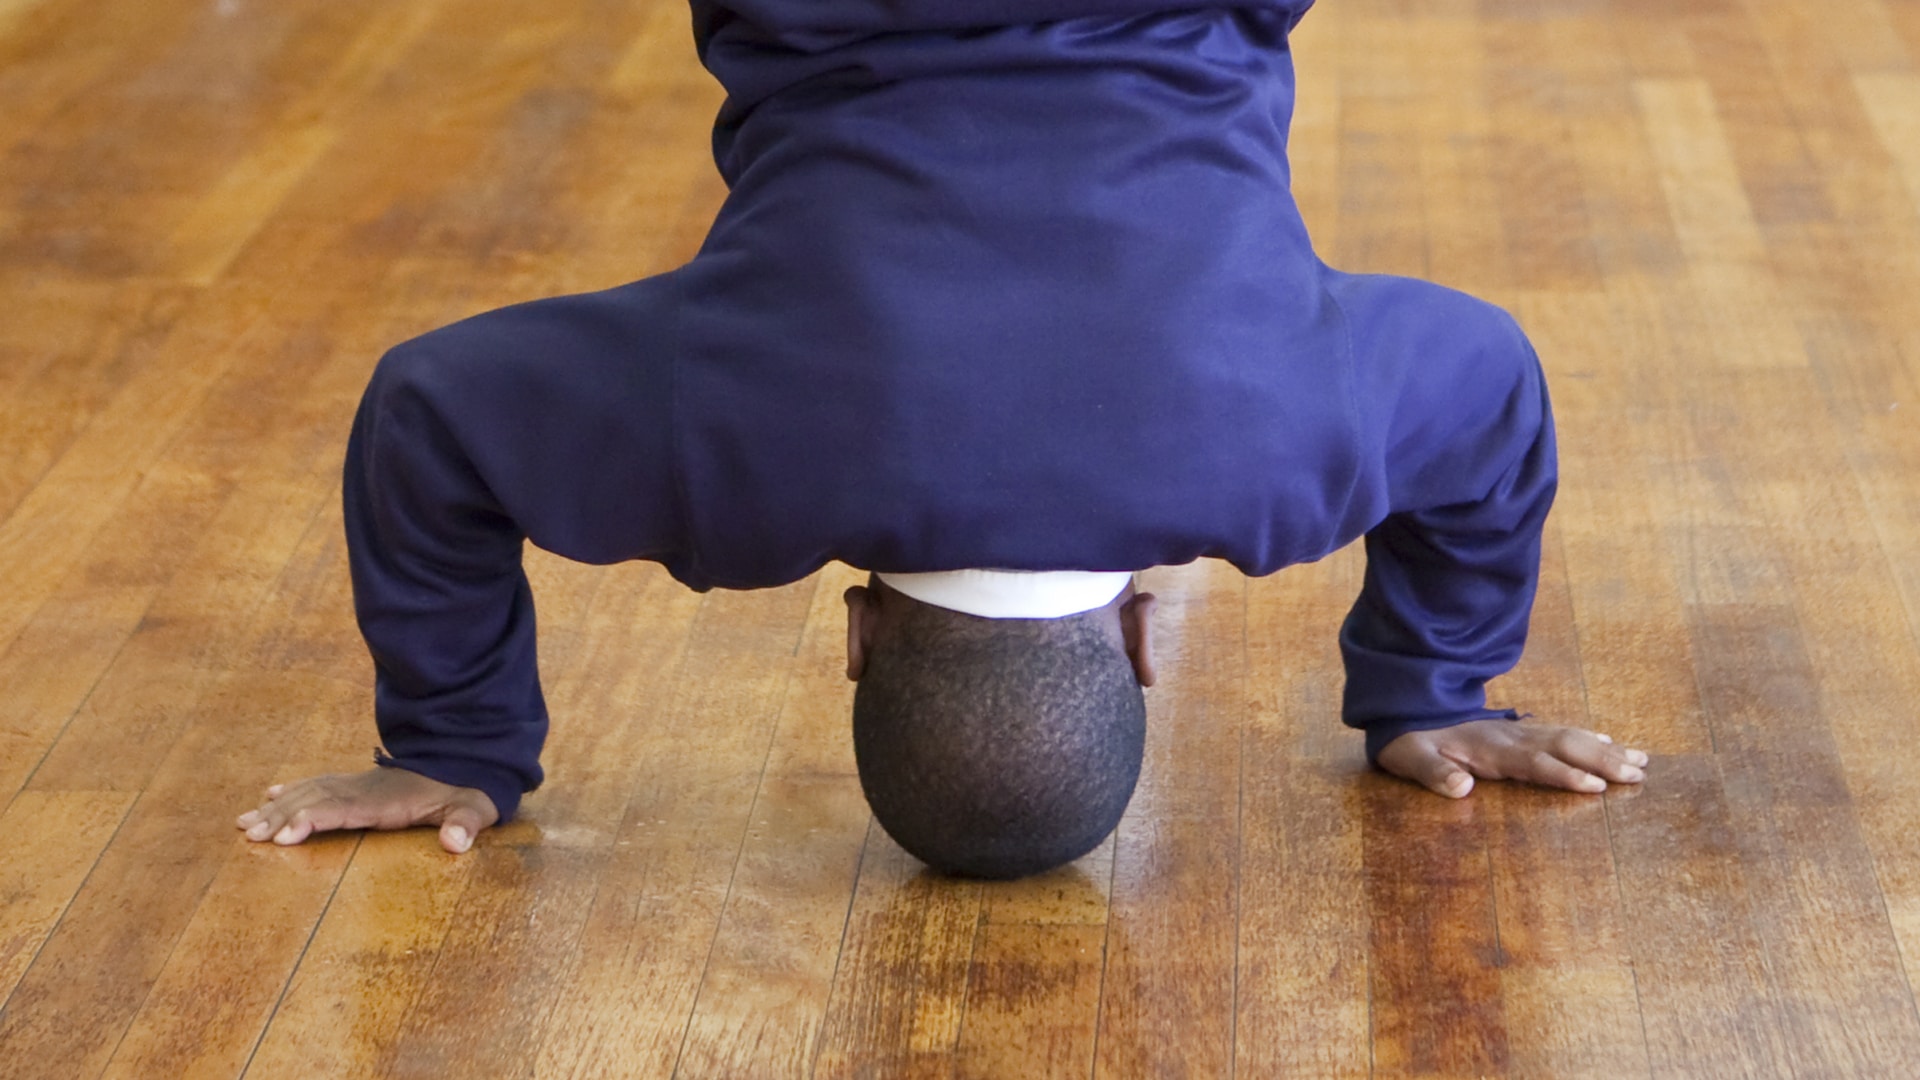 A schoolchild balancing on their head